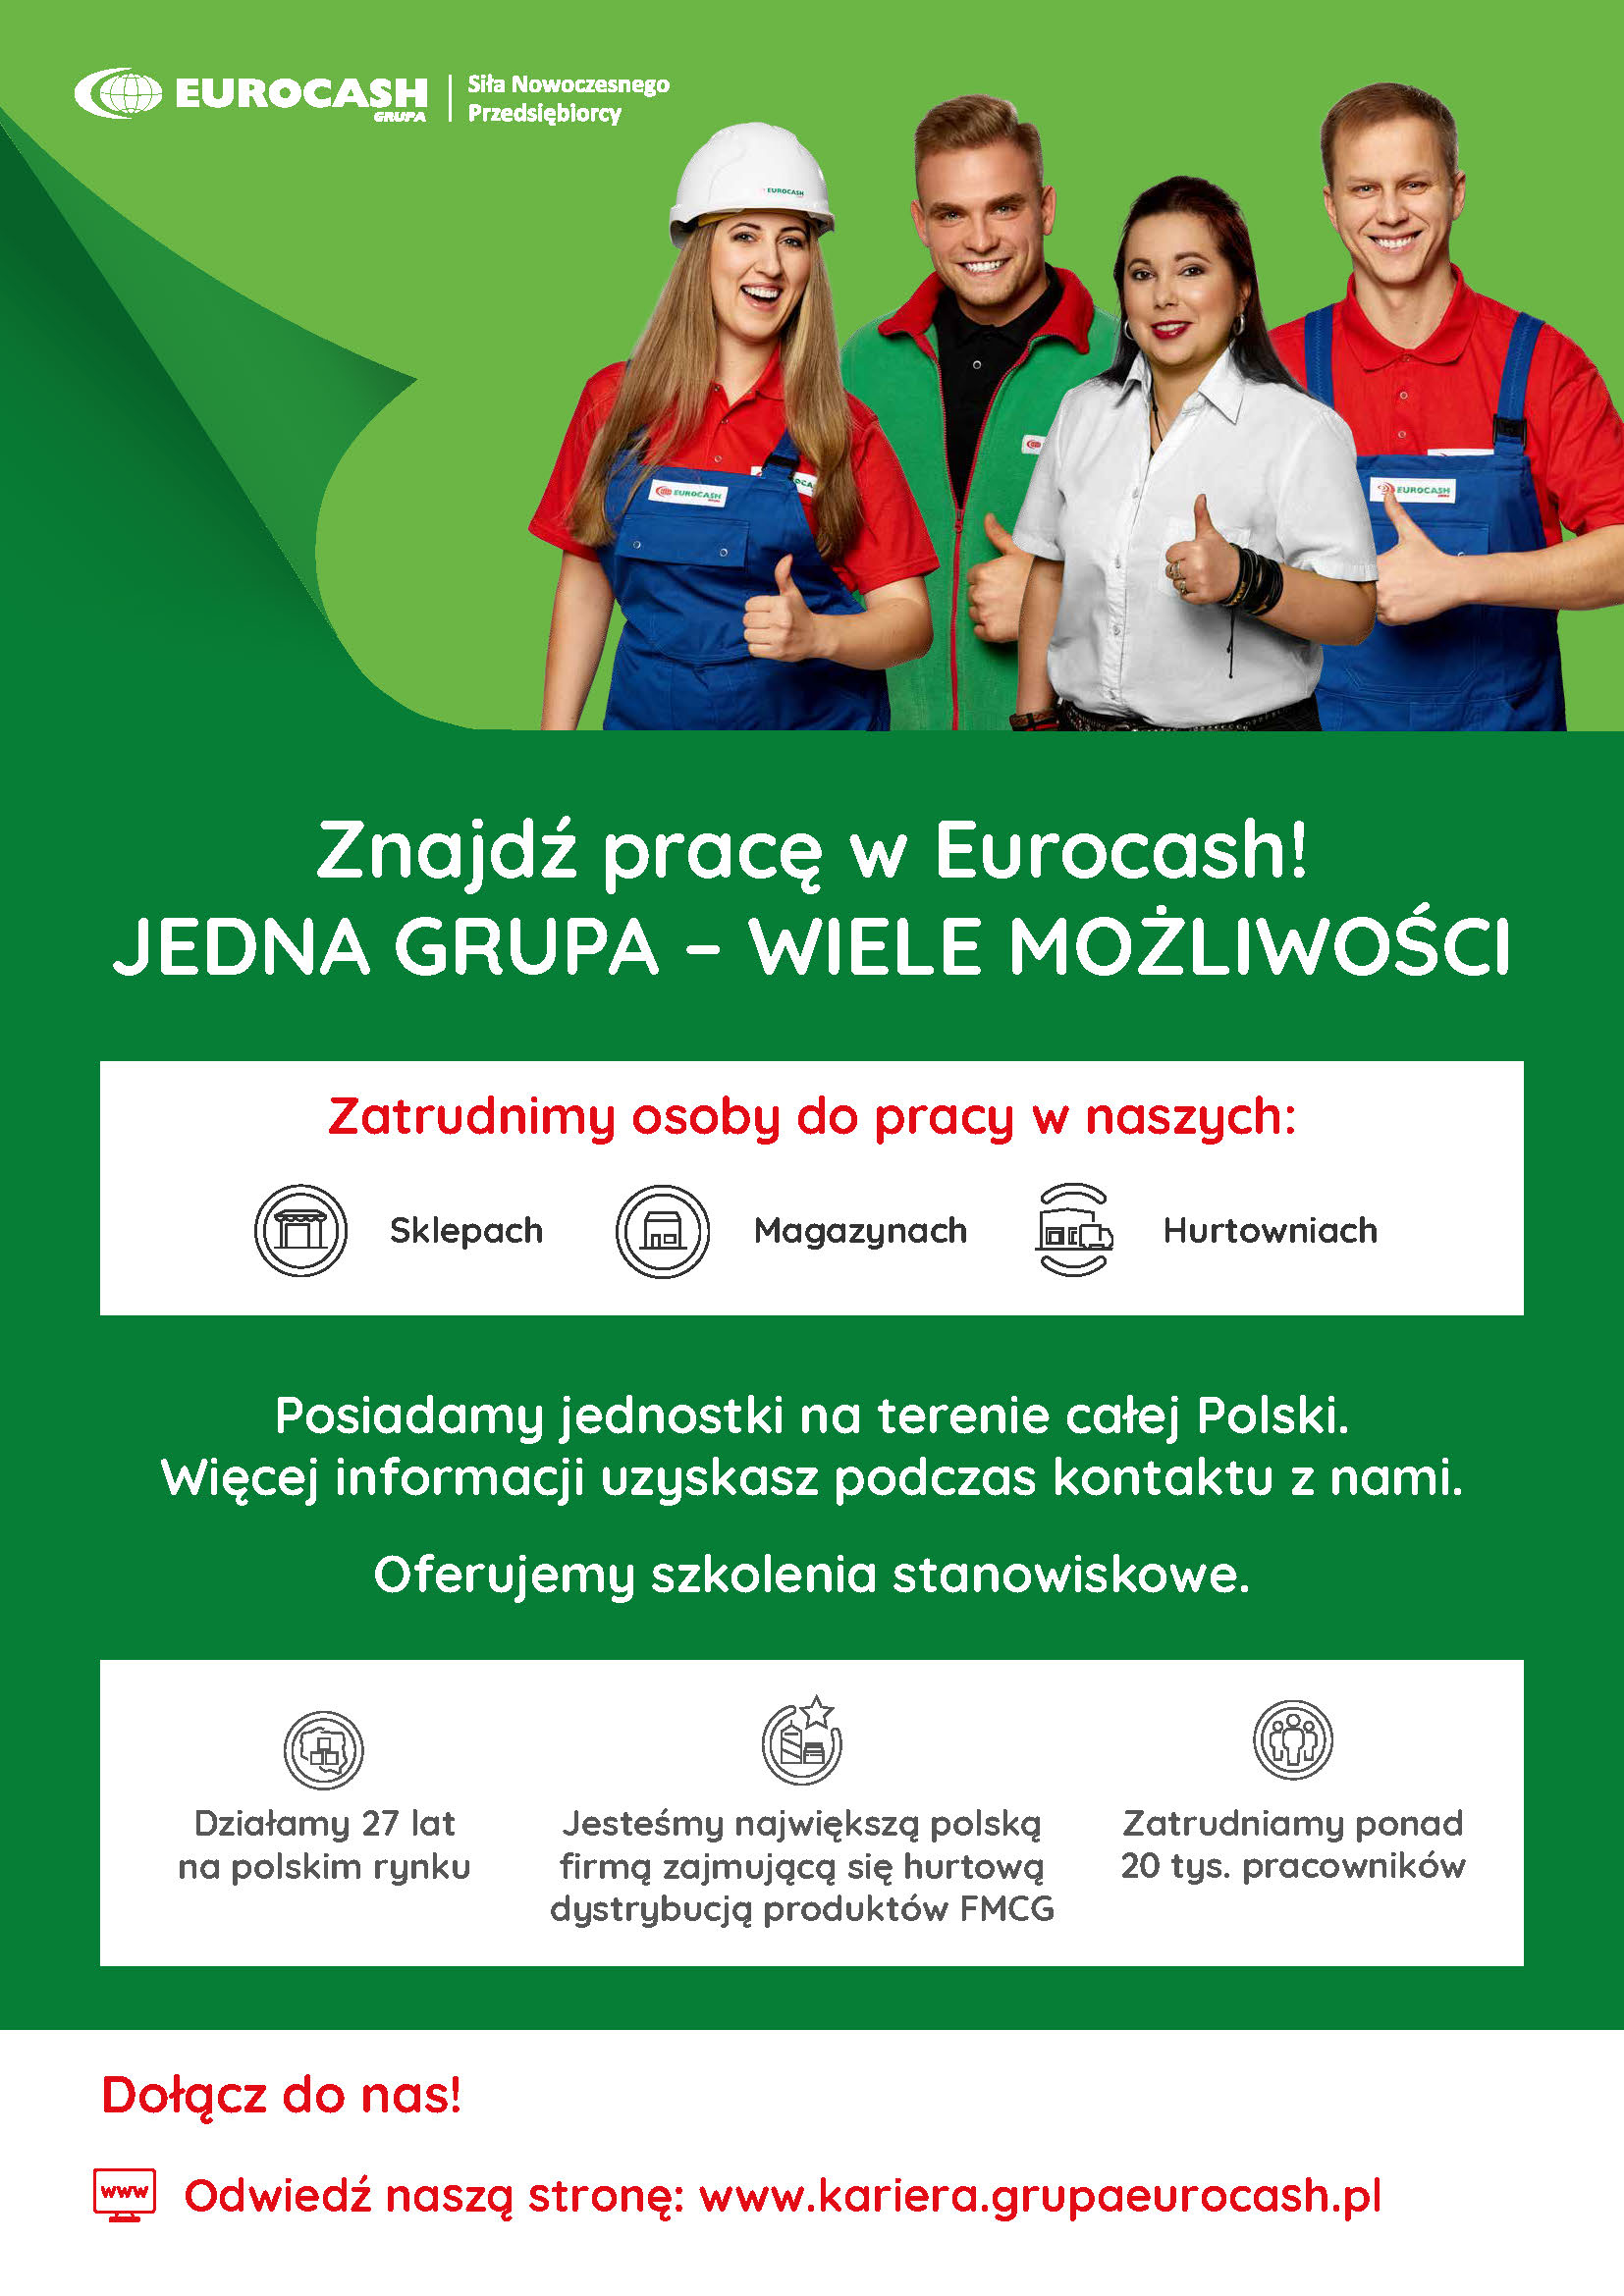 Plakat informujący o możliwości pracy w Eurocash dla uchodźców z Ukrainy